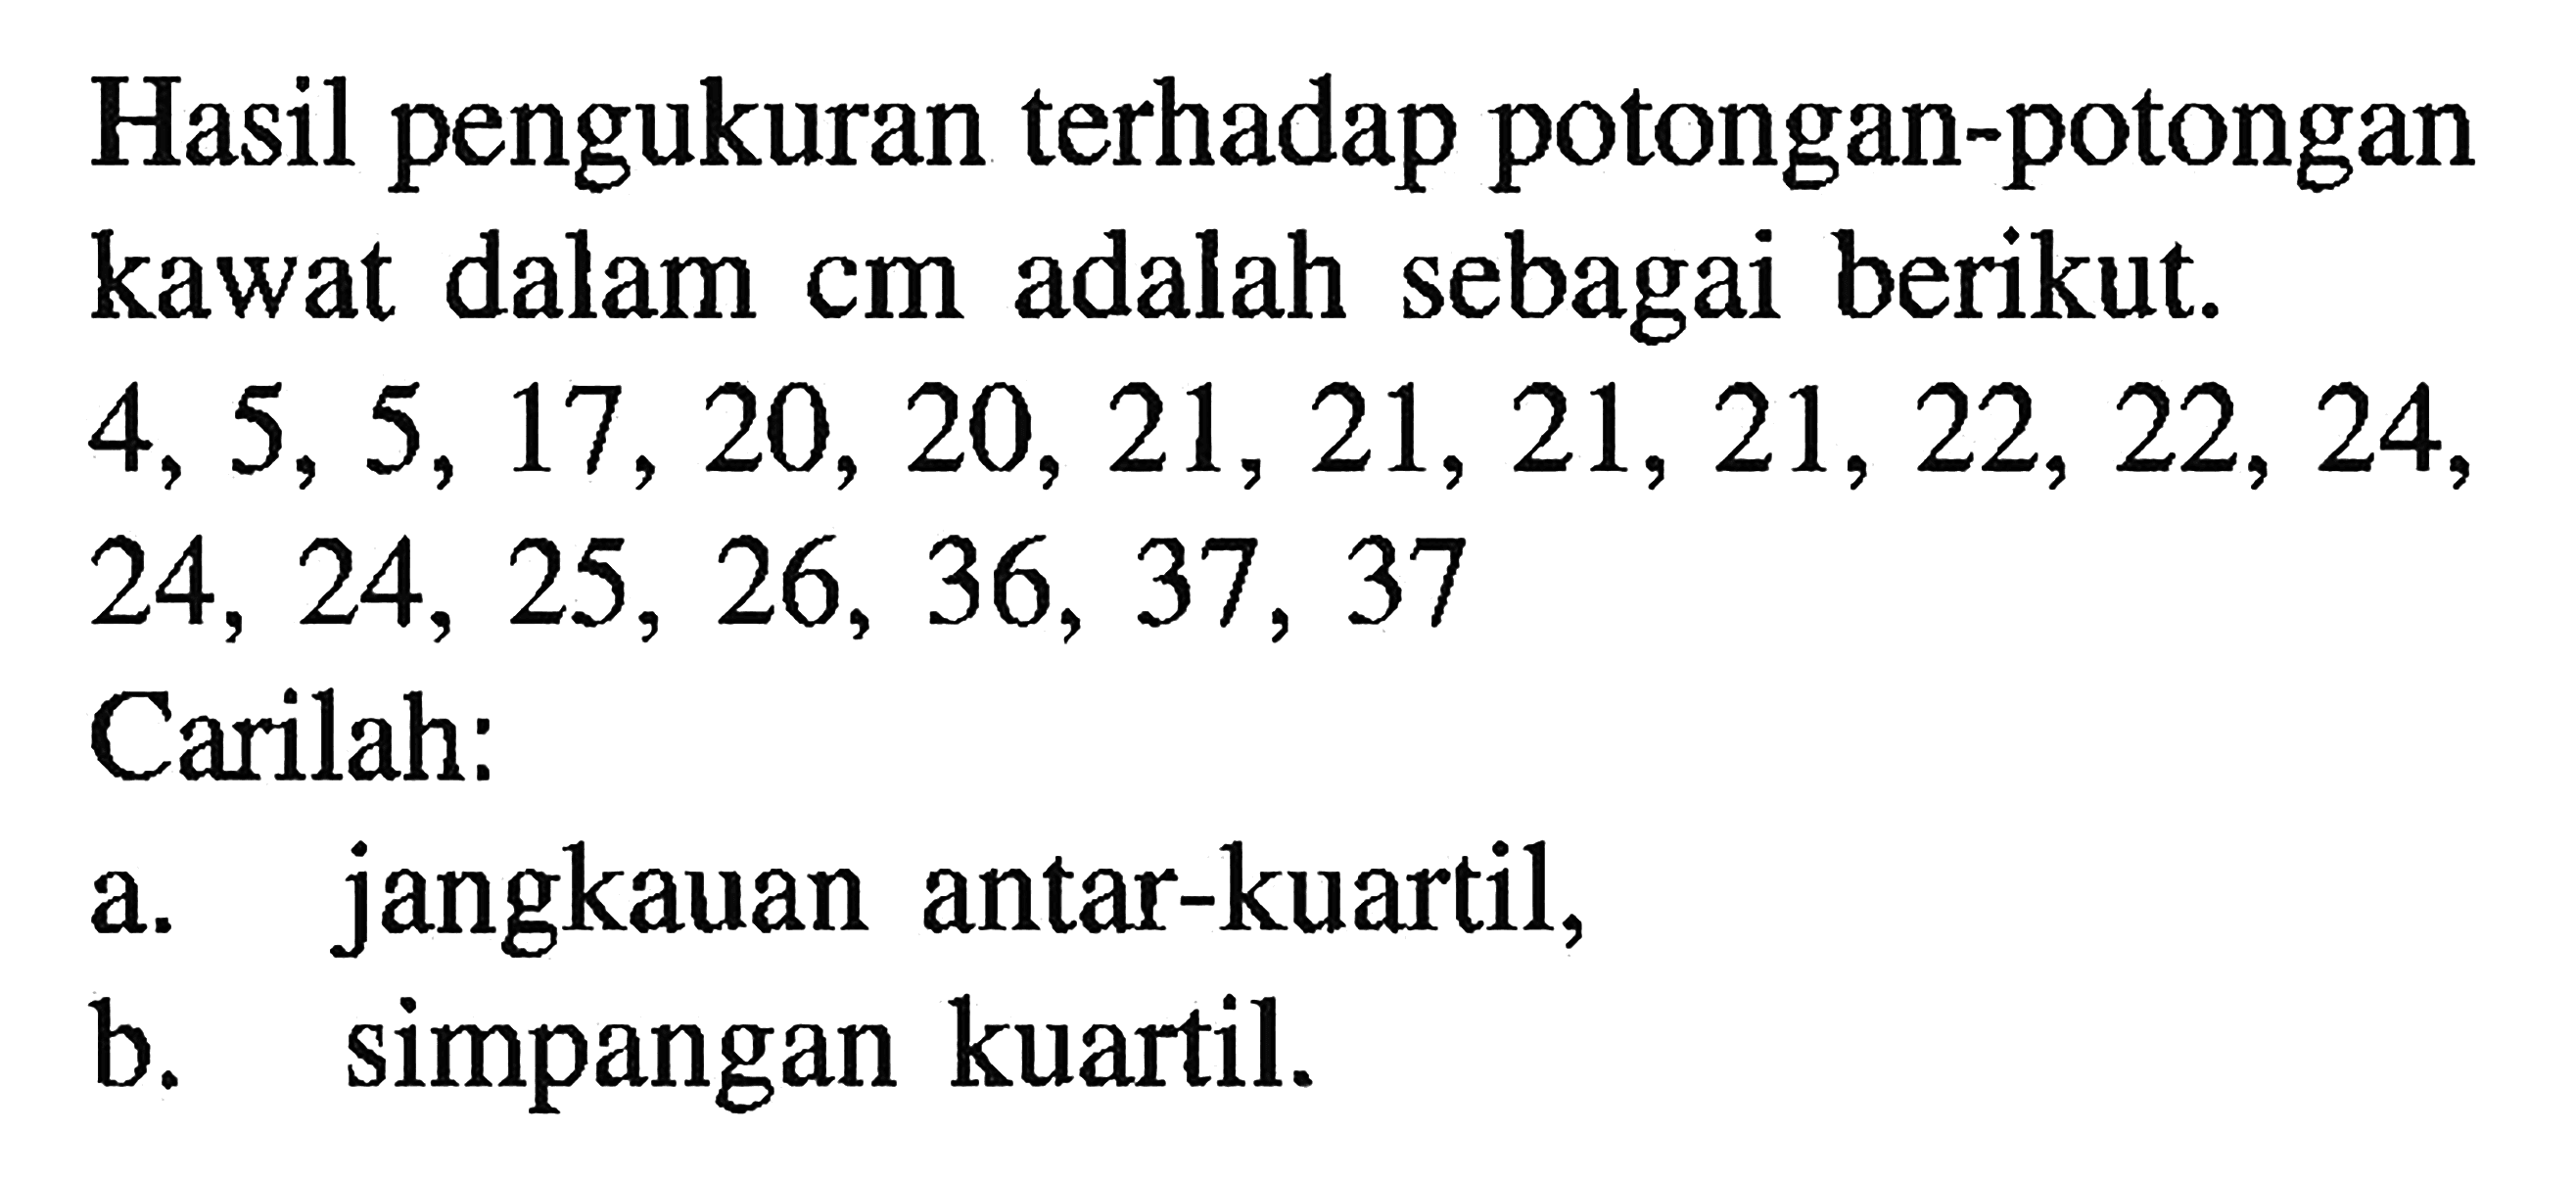 Hasil pengukuran terhadap potongan-potongan kawat dalam cm adalah sebagai berikut: 4,5,5, 17 20, 20, 21, 21,21,21,22, 22, 24, 24, 24, 25, 26, 36, 37, 37 Carilah: a. jangkauan antar-kuartil, b. simpangan kuartil.